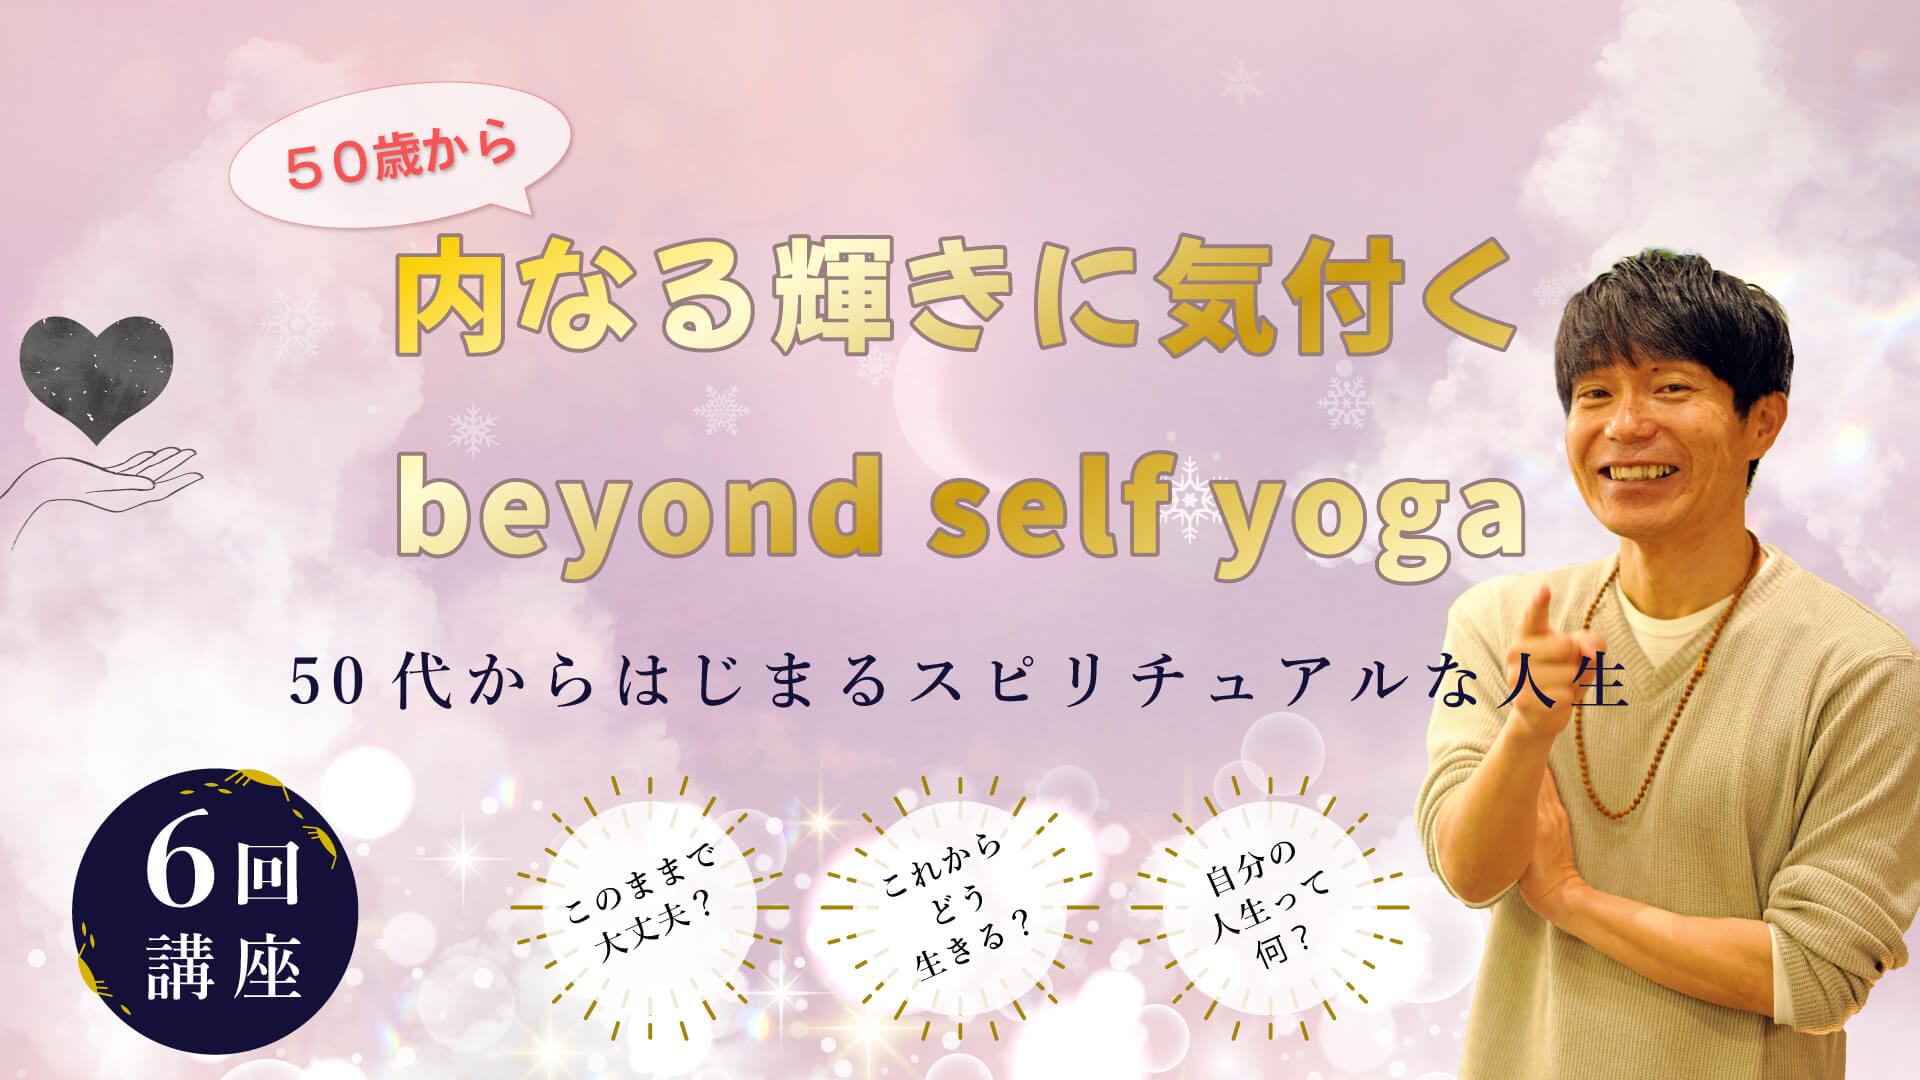 50歳から内なる輝きに気付くBeyond self yoga講座